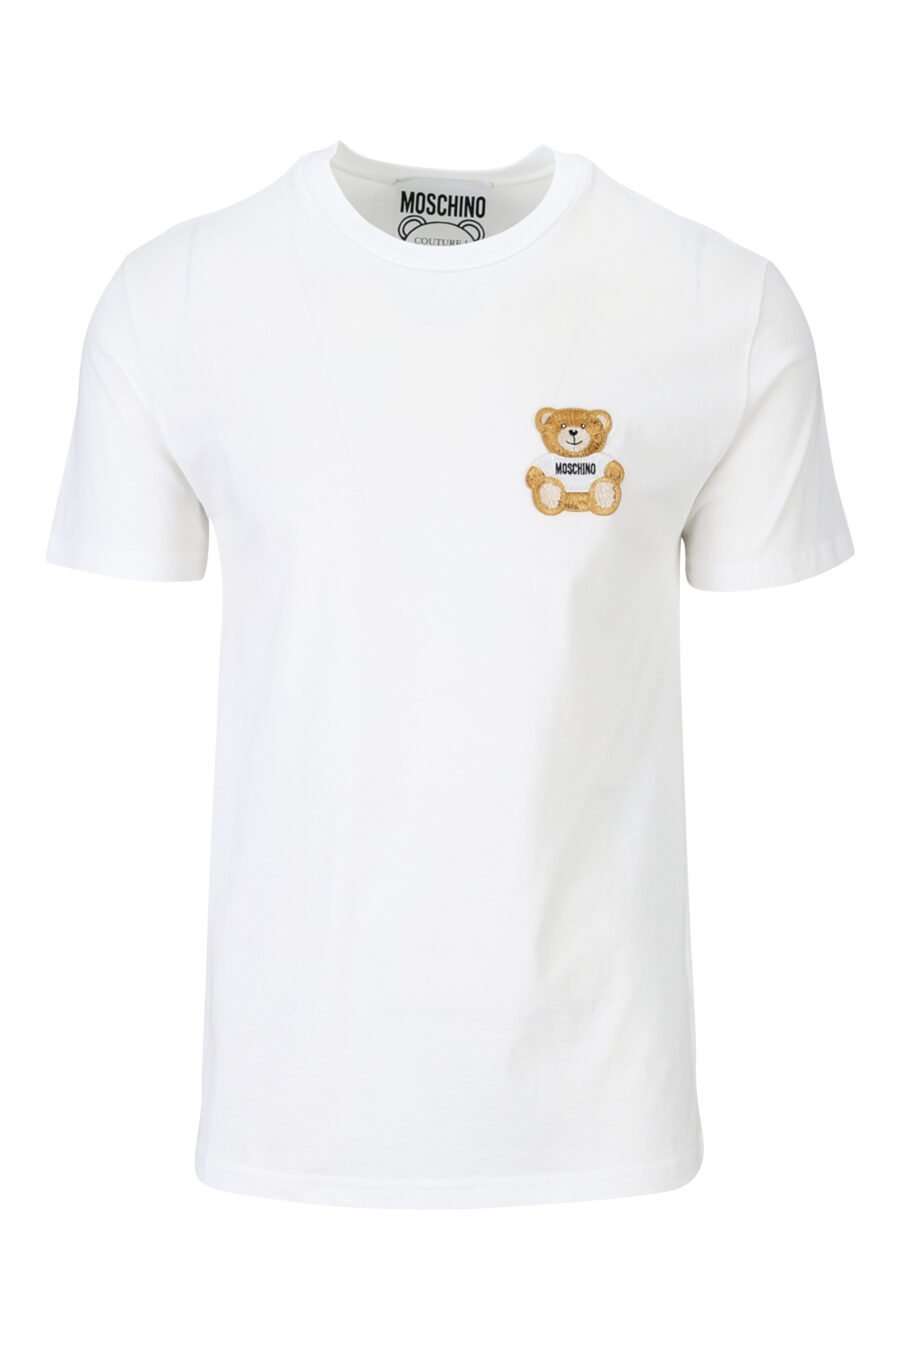 T-shirt éco blanc avec logo mini ours - 889316725384